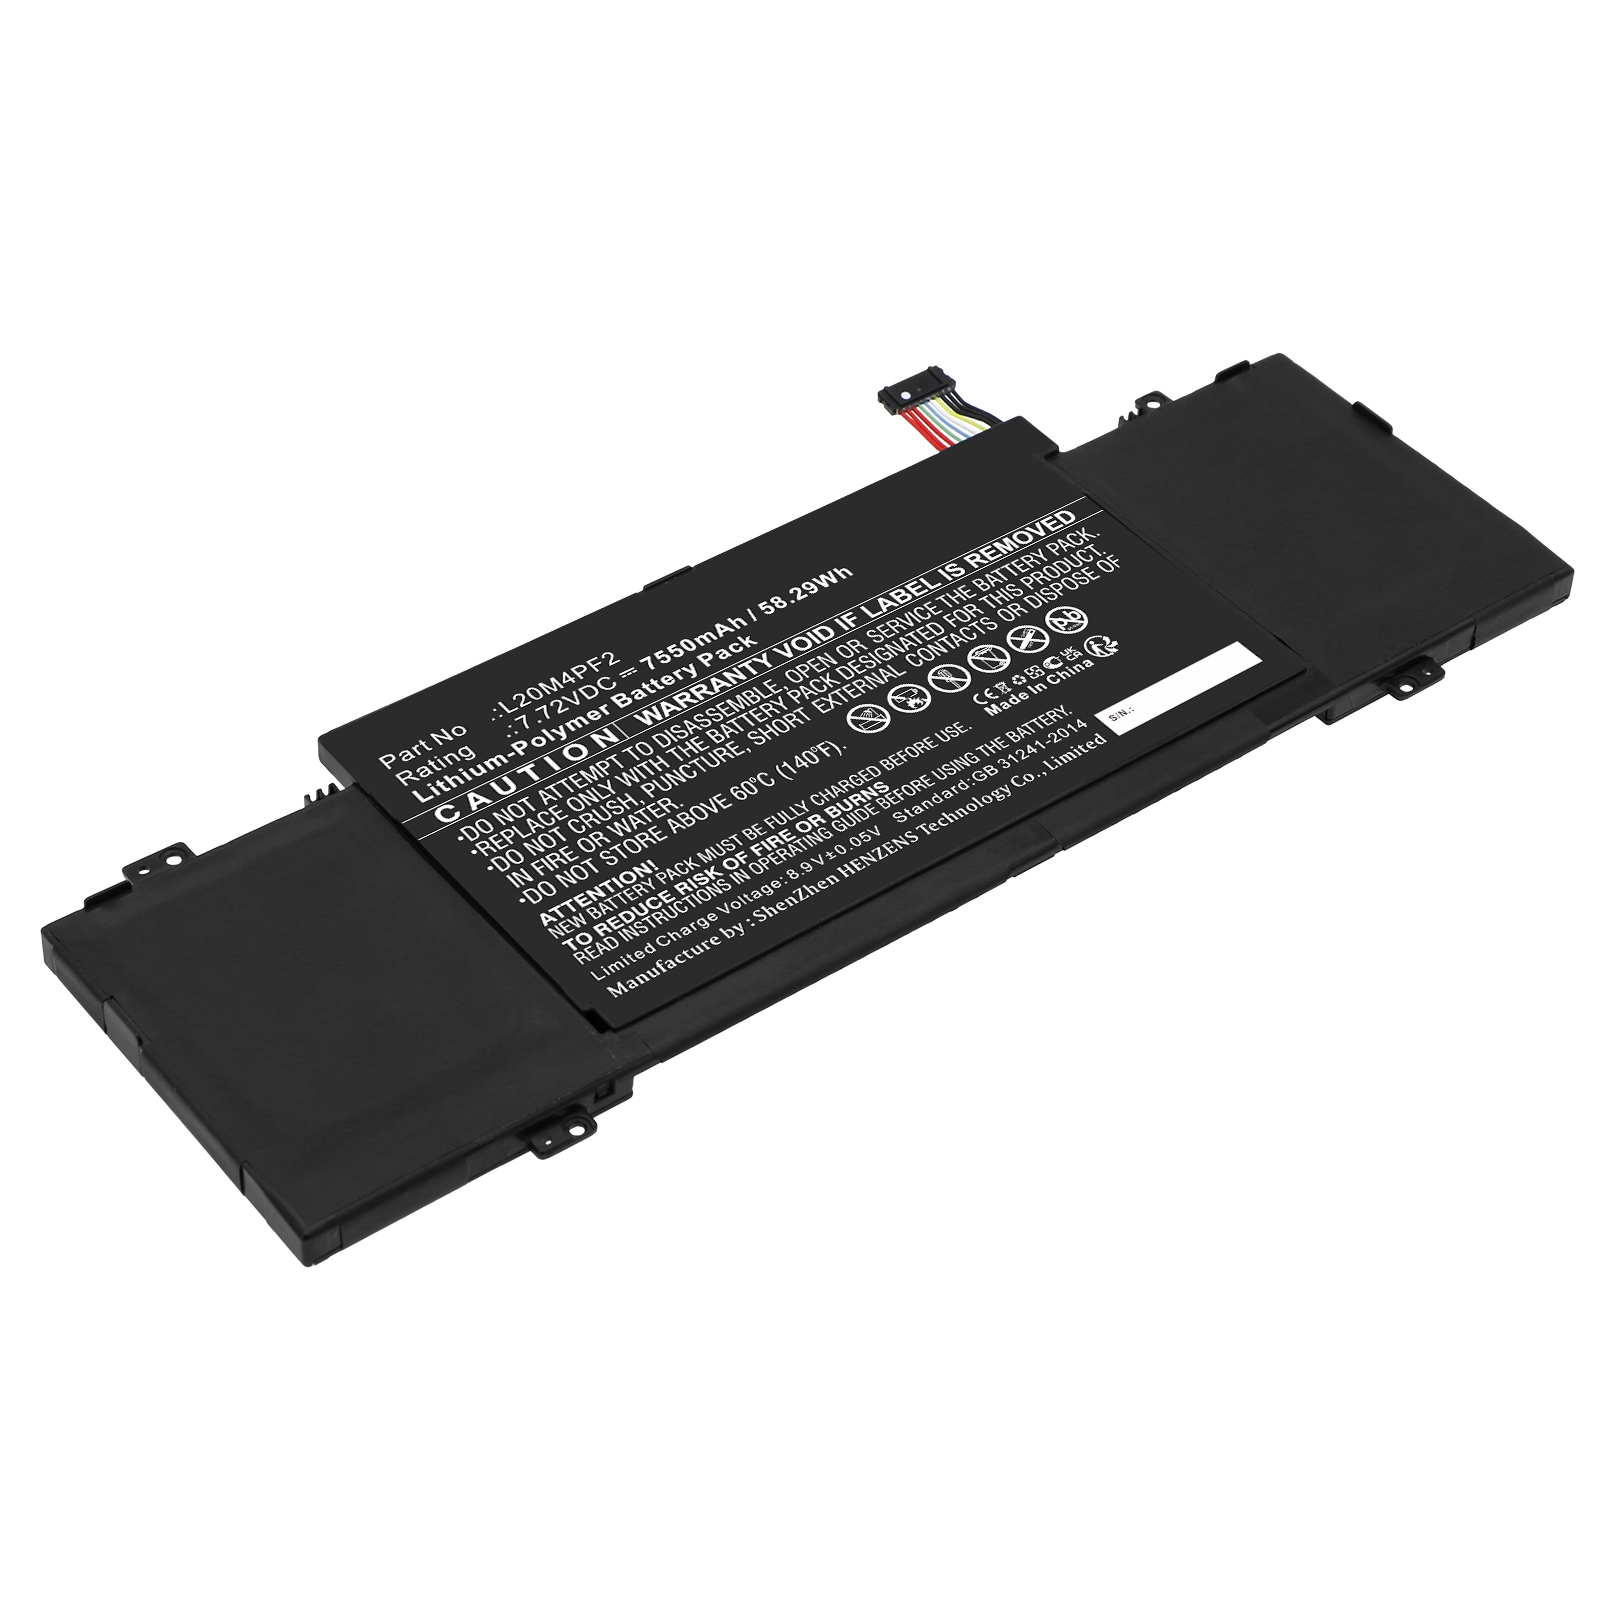 Synergy Digital Laptop Battery, Compatible with Lenovo L20C4PF2 Laptop Battery (Li-Pol, 7.72V, 7550mAh)